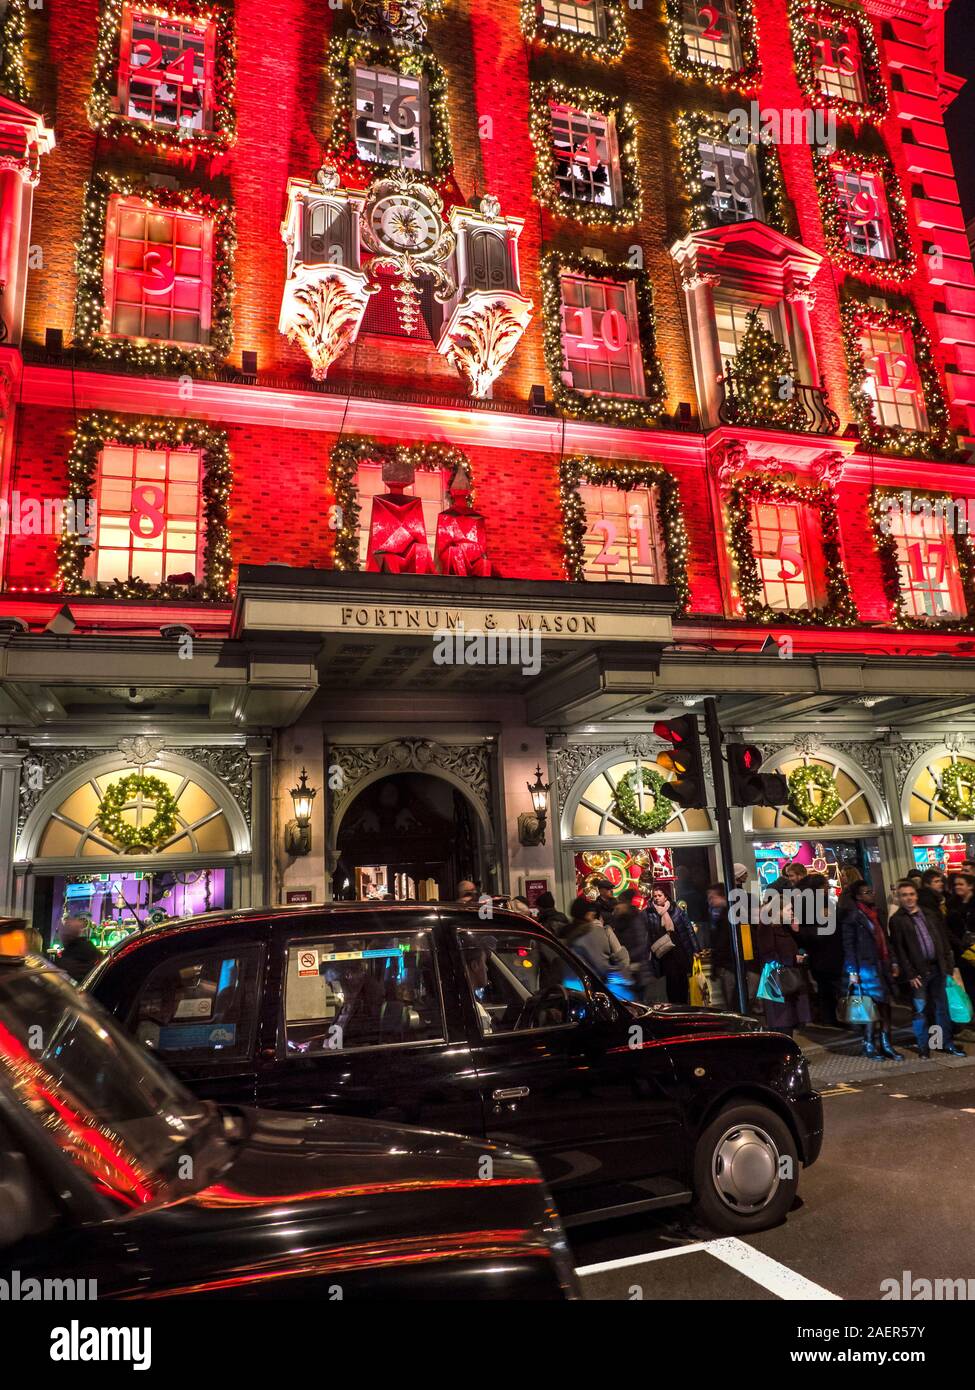 Fortnum & Mason Noël department store façade, avec un calendrier de l'avent rouge nuit à thème très occupé avec les acheteurs de Noël, les taxis noirs de Londres en premier plan Piccadilly Londres UK 2019 Banque D'Images